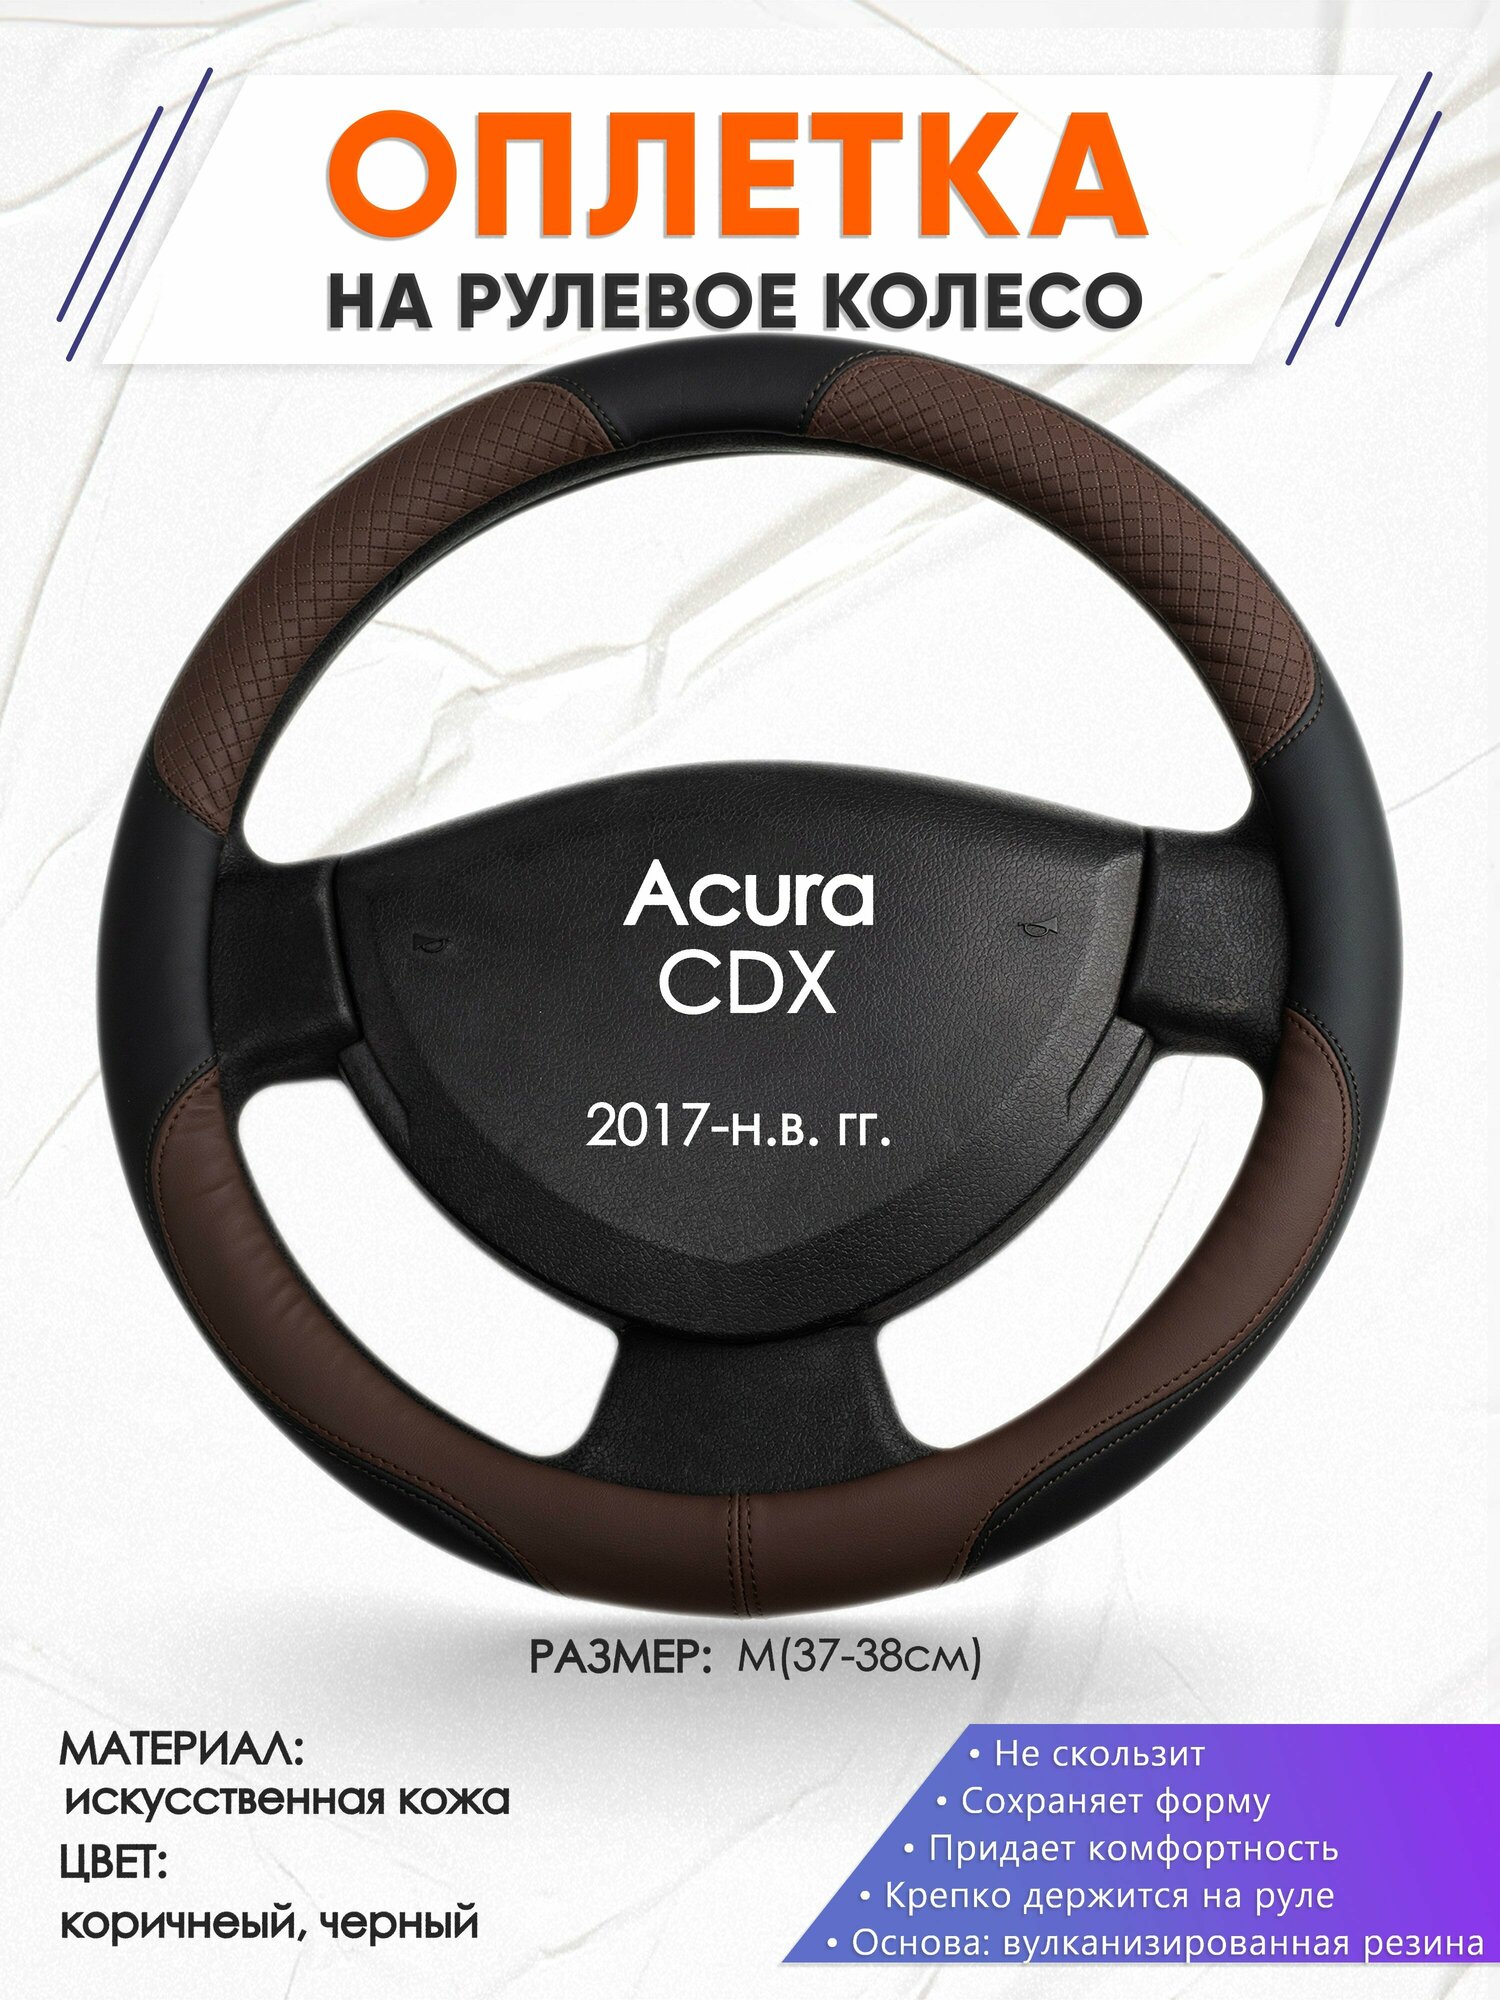 Оплетка наруль для Acura CDX(Акура СДХ) 2017-н.в. годов выпуска, размер M(37-38см), Искусственная кожа 62